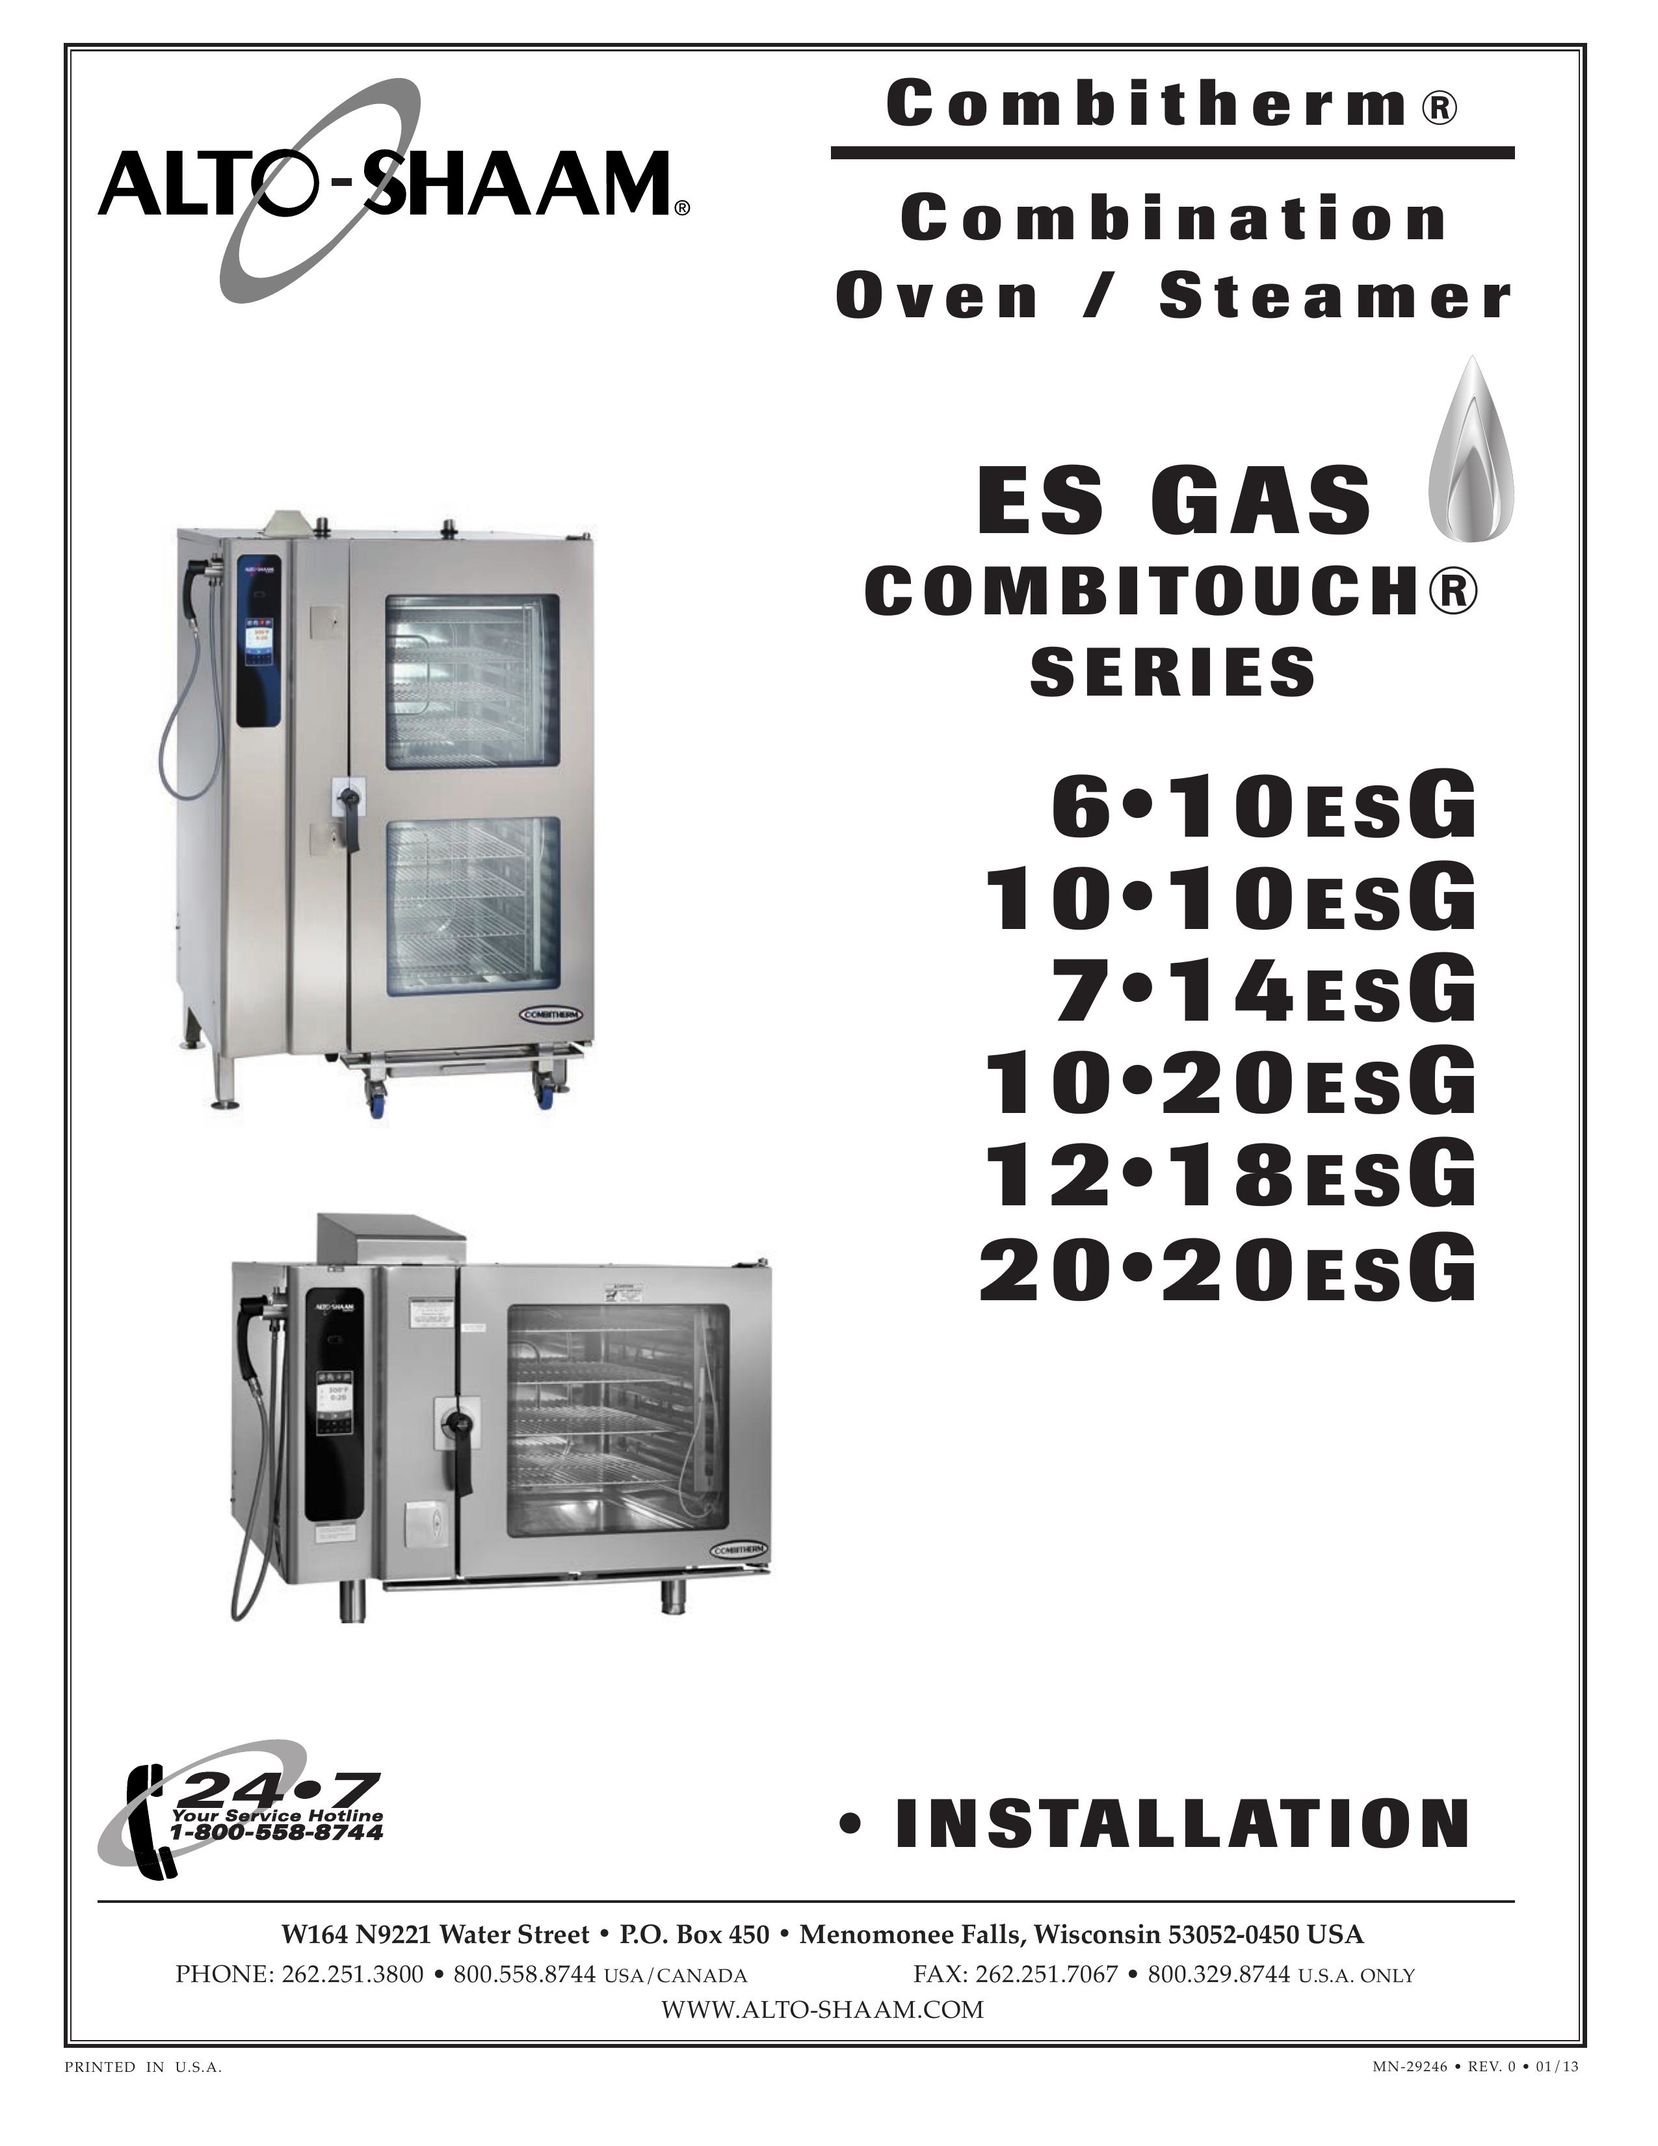 Alto-Shaam 1010ESG Oven User Manual